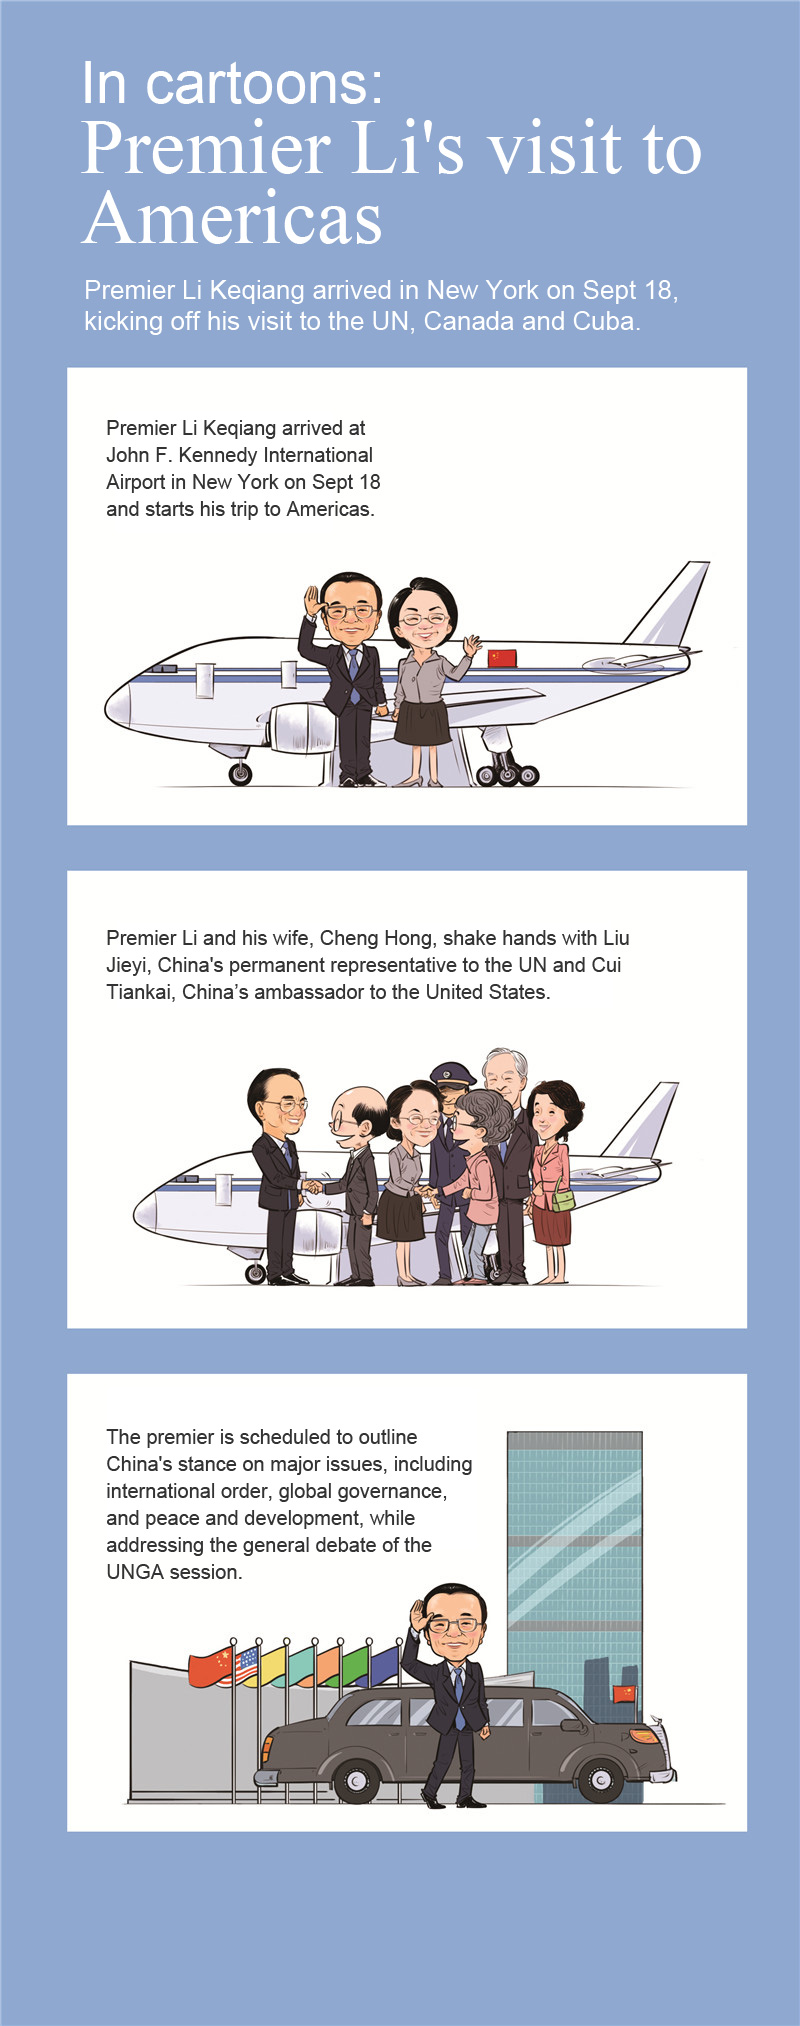 In cartoons: Premier Li's visit to Americas